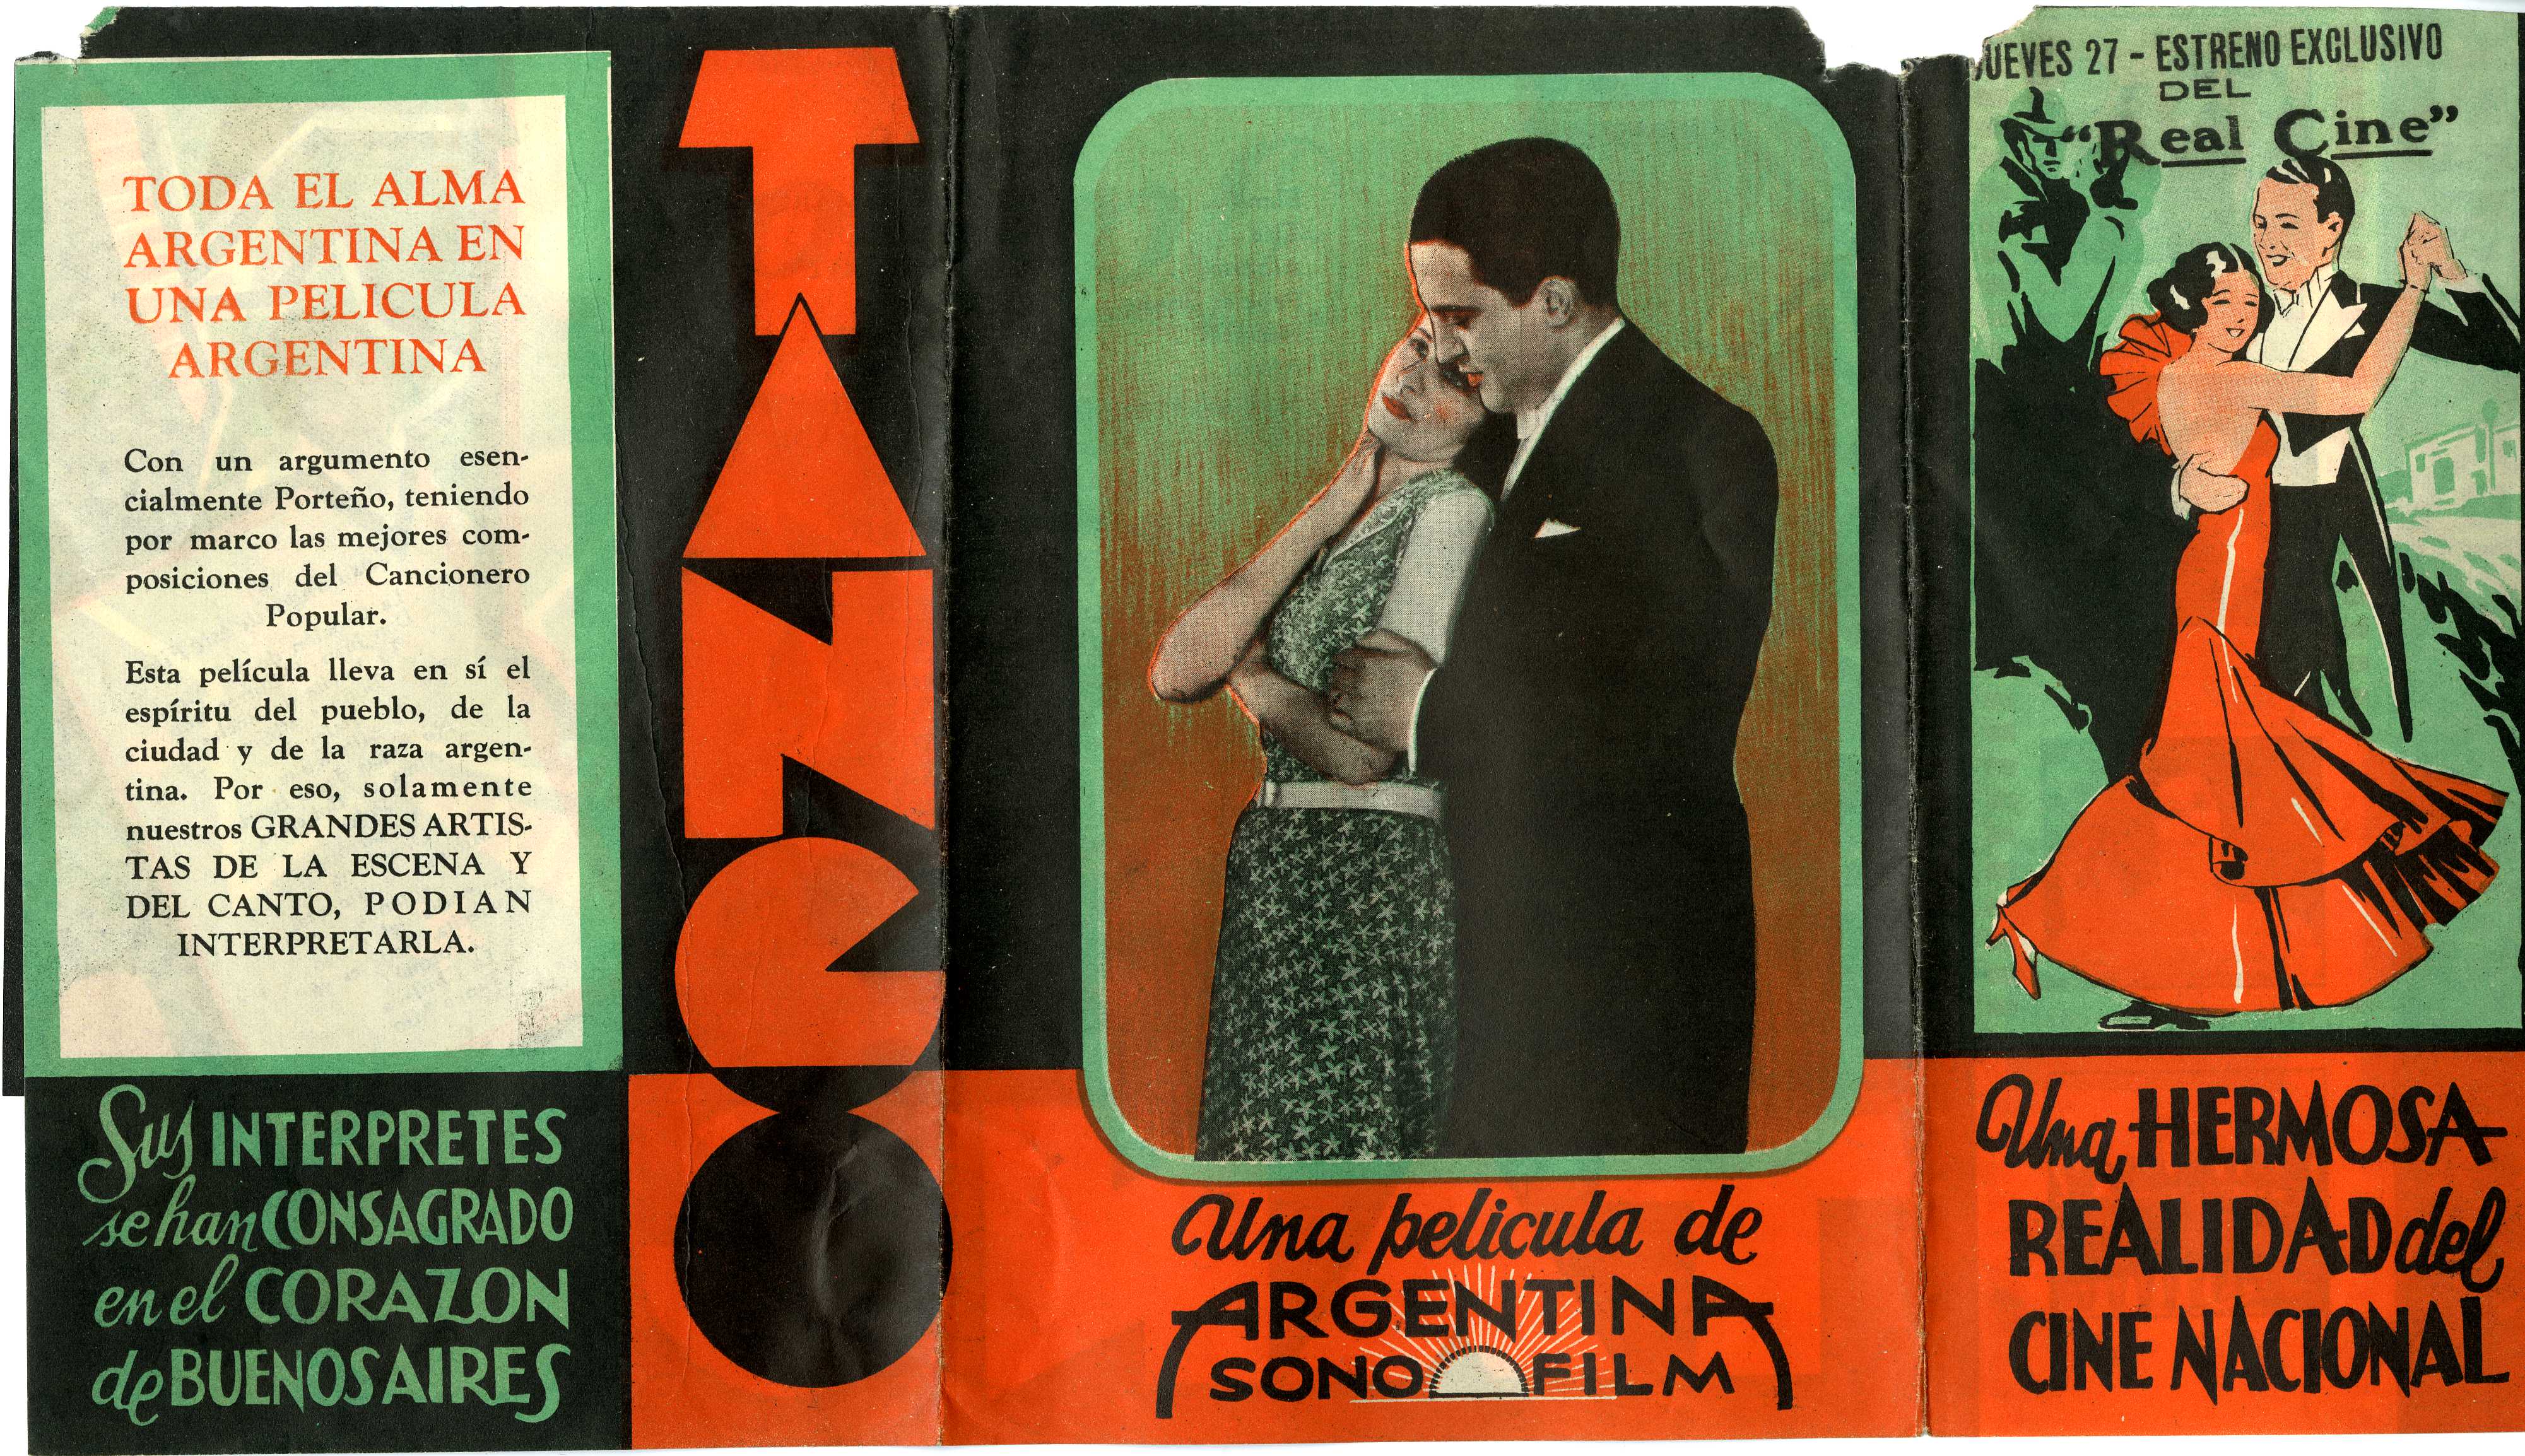 "Tango", la primera película sonora argentina, a 87 años de su estreno